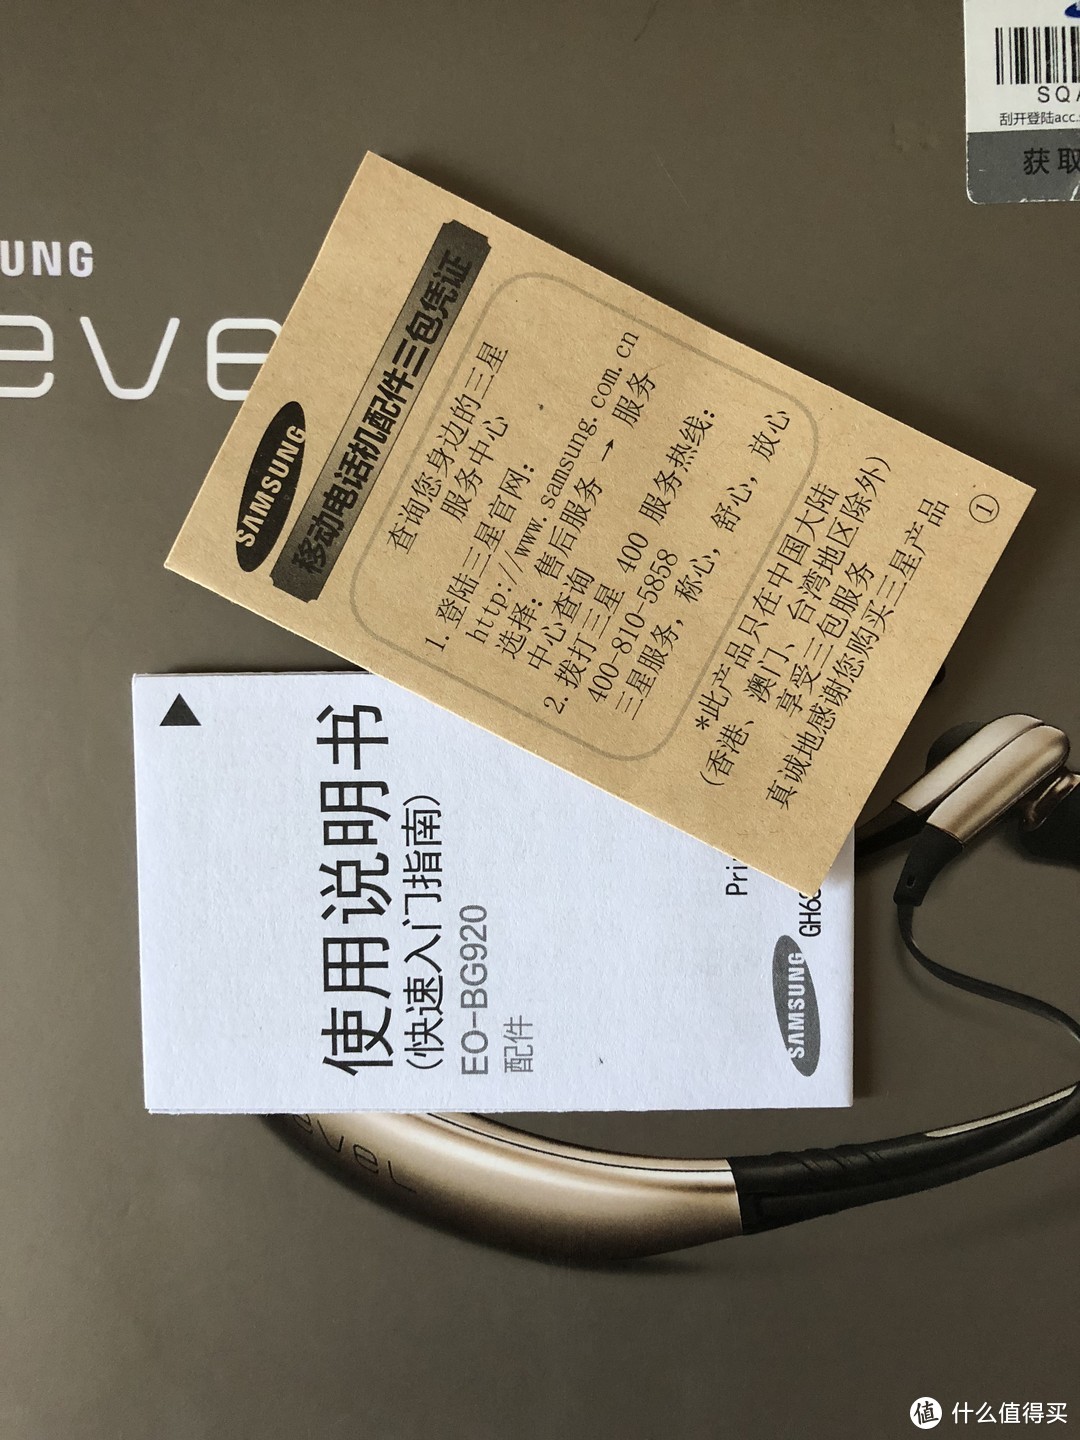 SAMSUNG 三星 Level U 项圈式蓝牙耳机 开箱简评